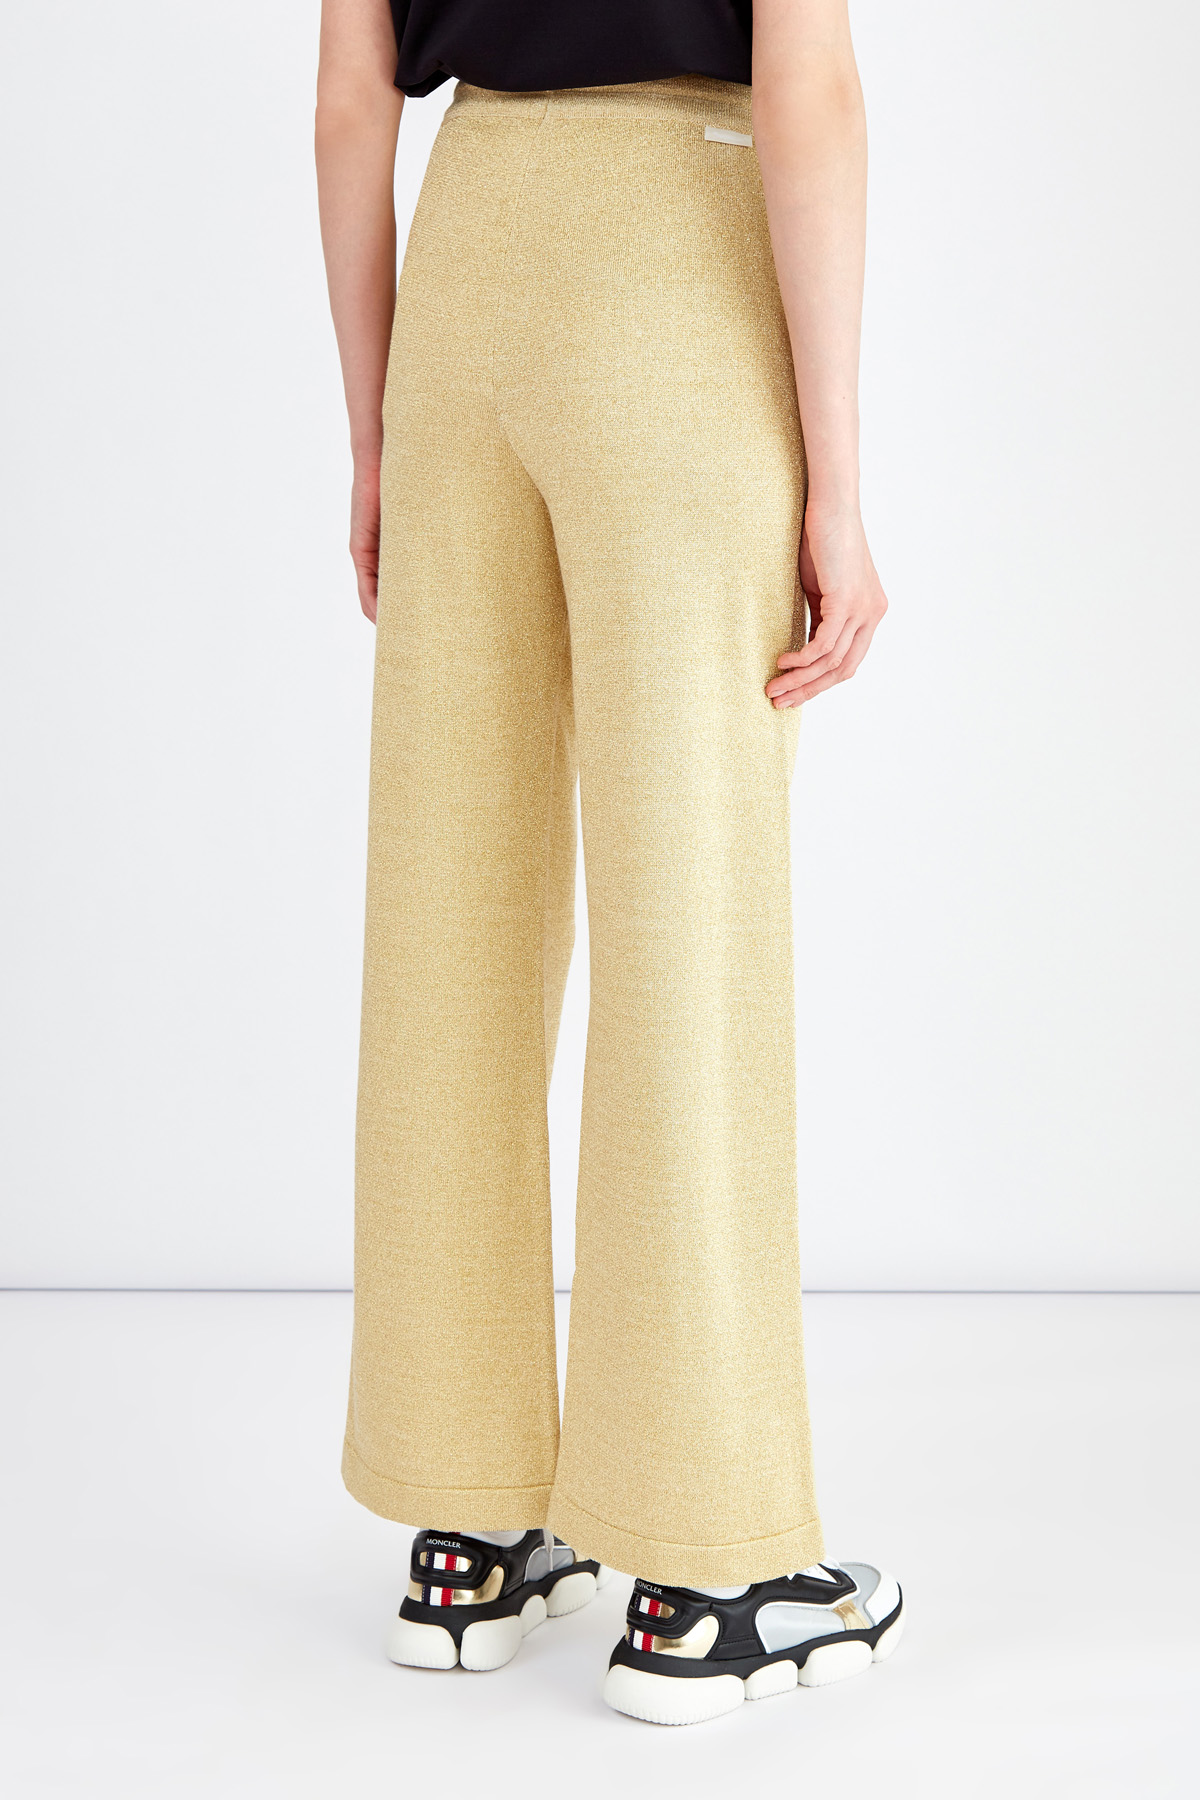 Широкие брюки из мерцающей пряжи с люрексом золотистого цвета MONCLER, размер 42 - фото 4